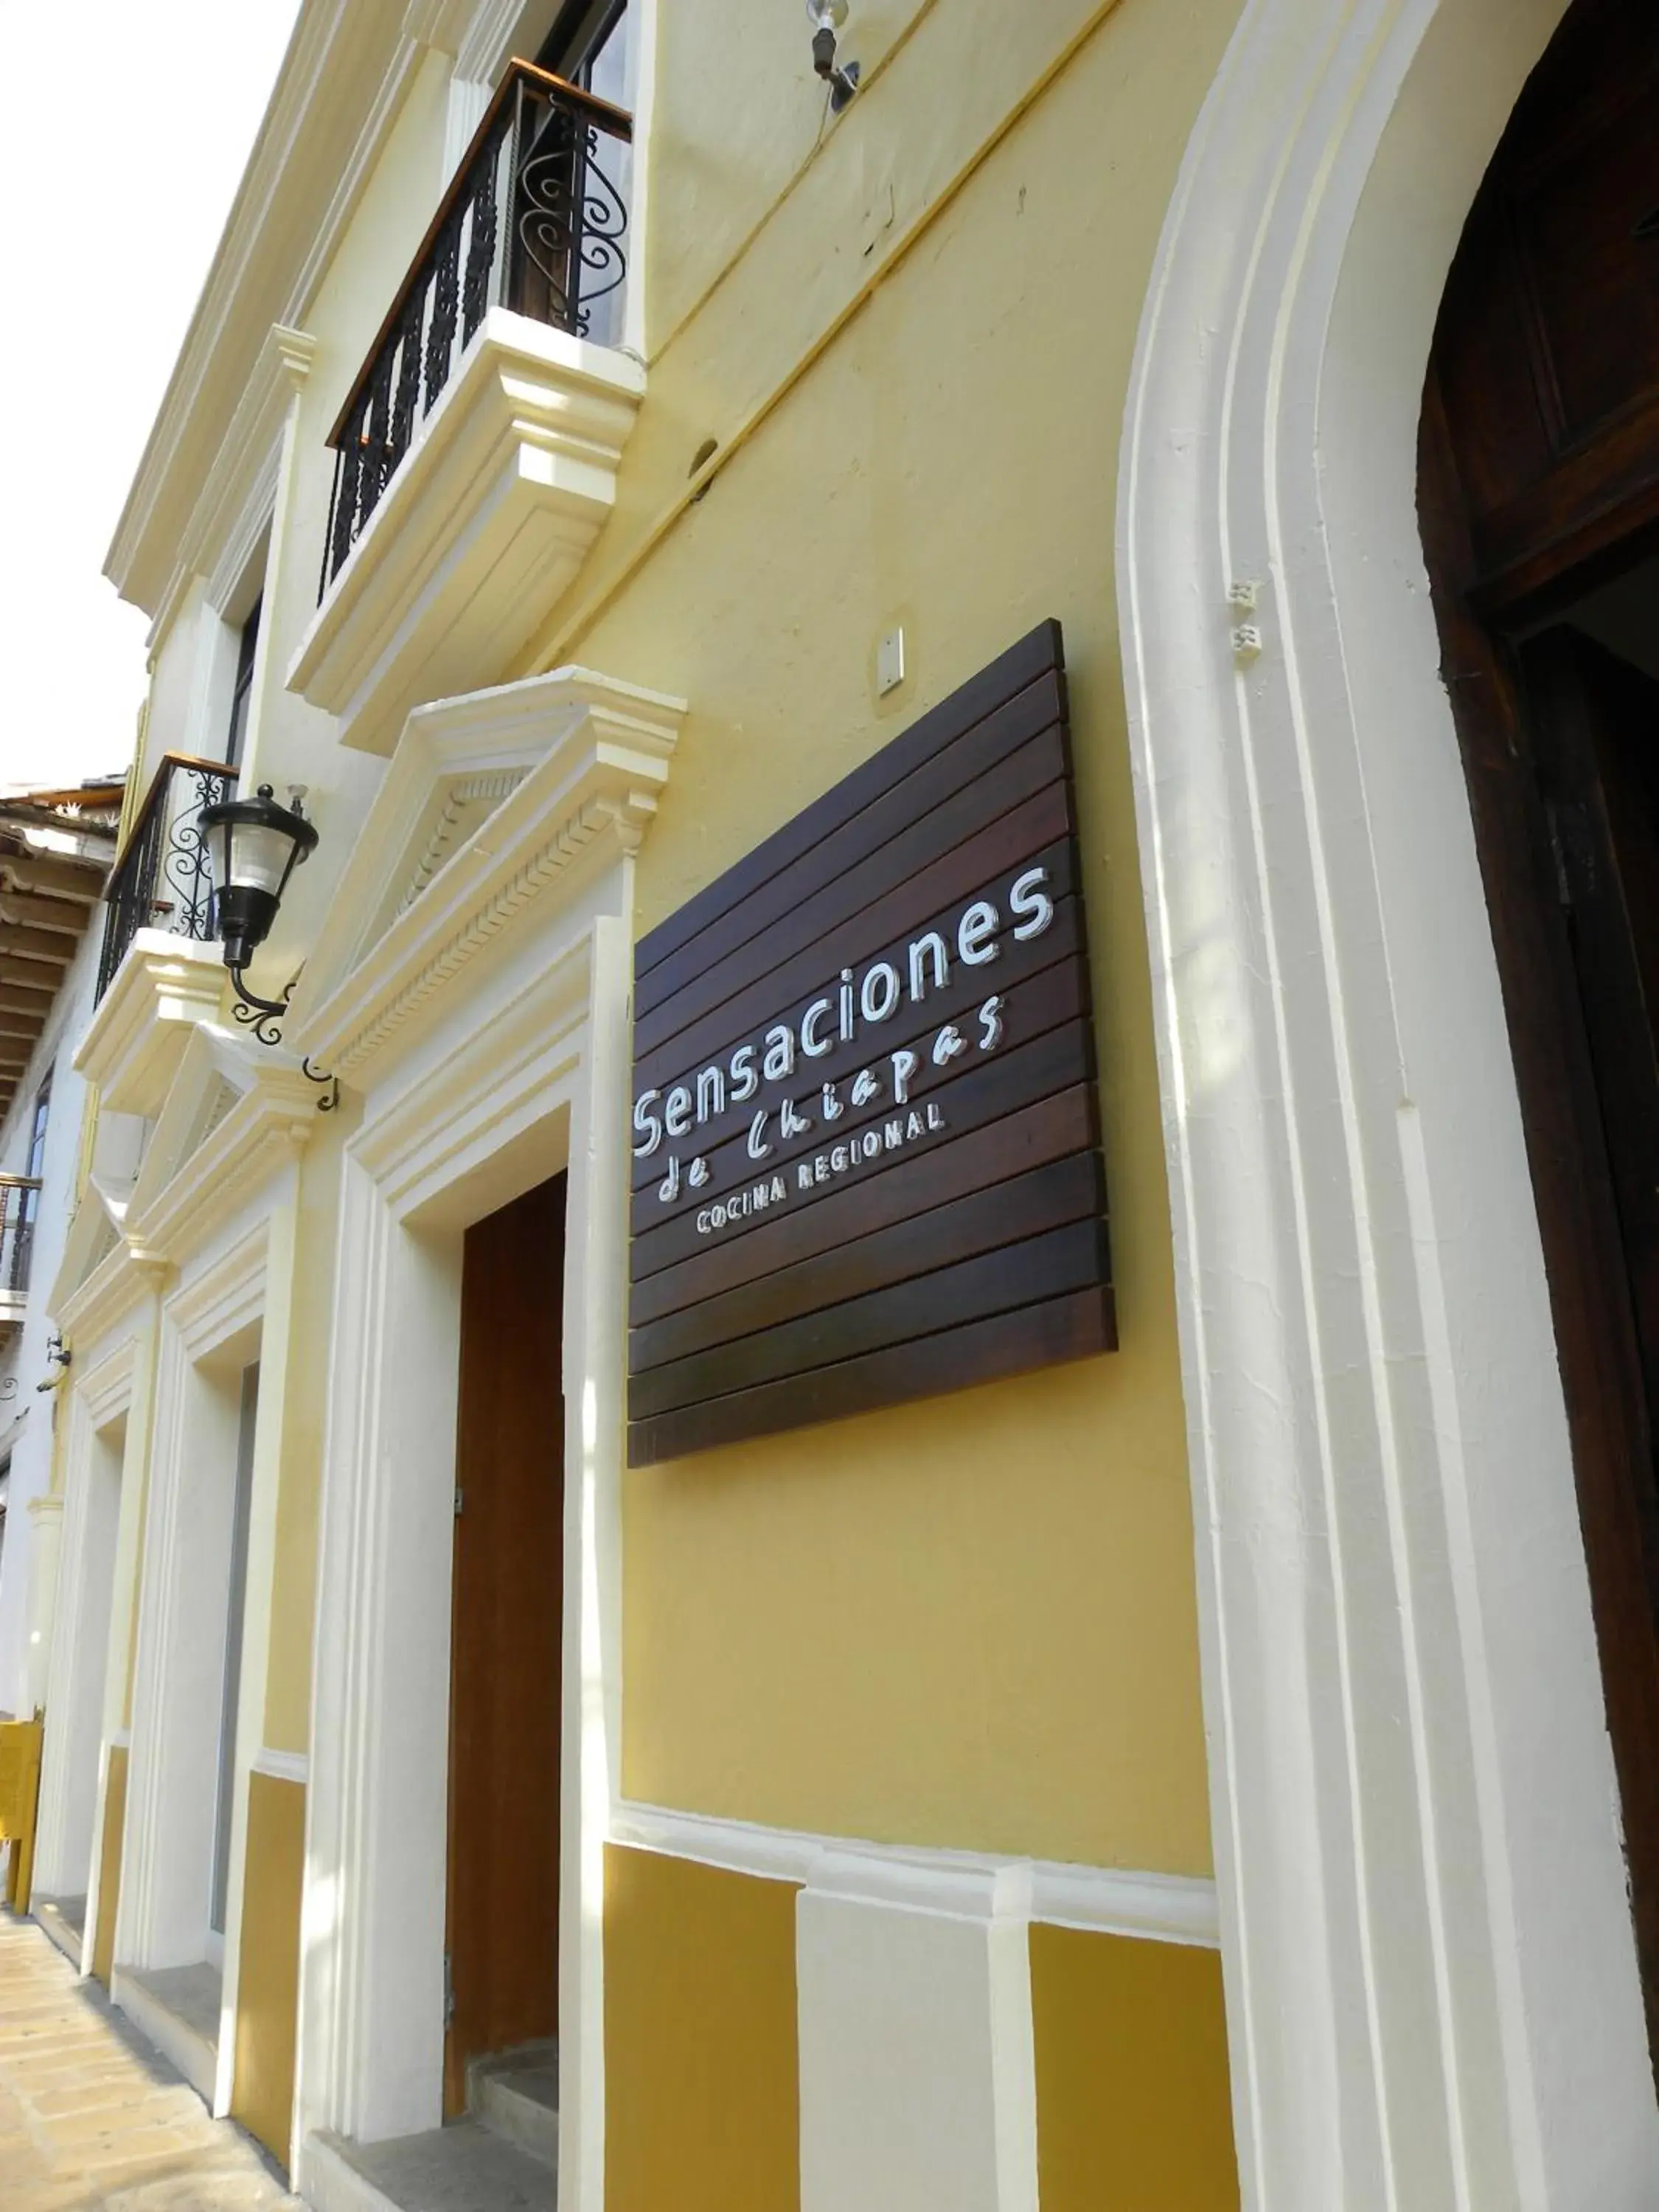 Facade/entrance in Hotel Ciudad Real Centro Historico